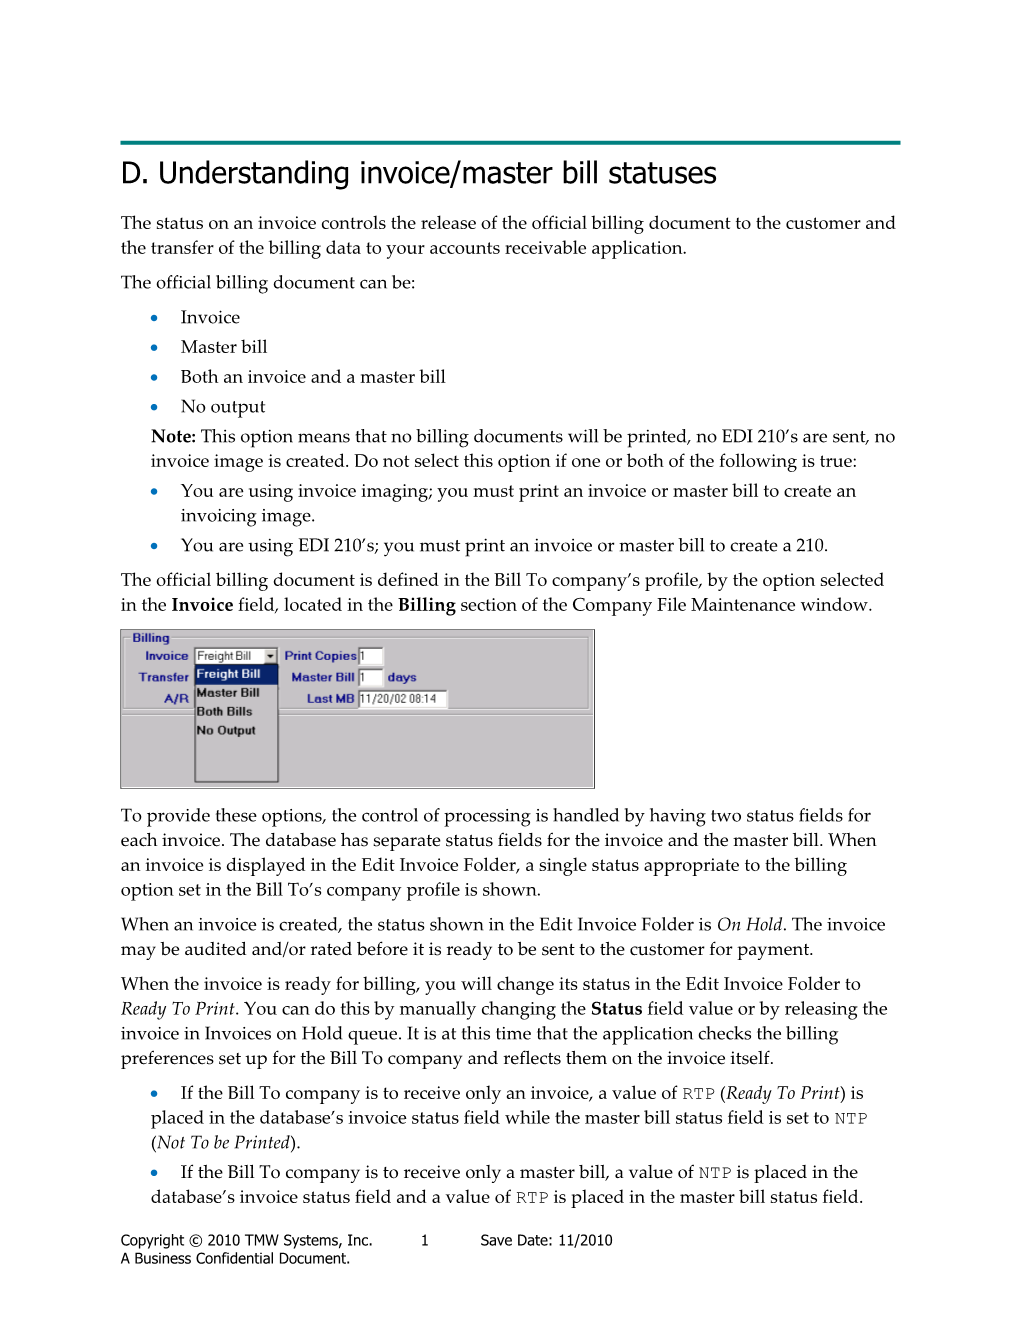 Understanding Invoice/Master Bill Statuses